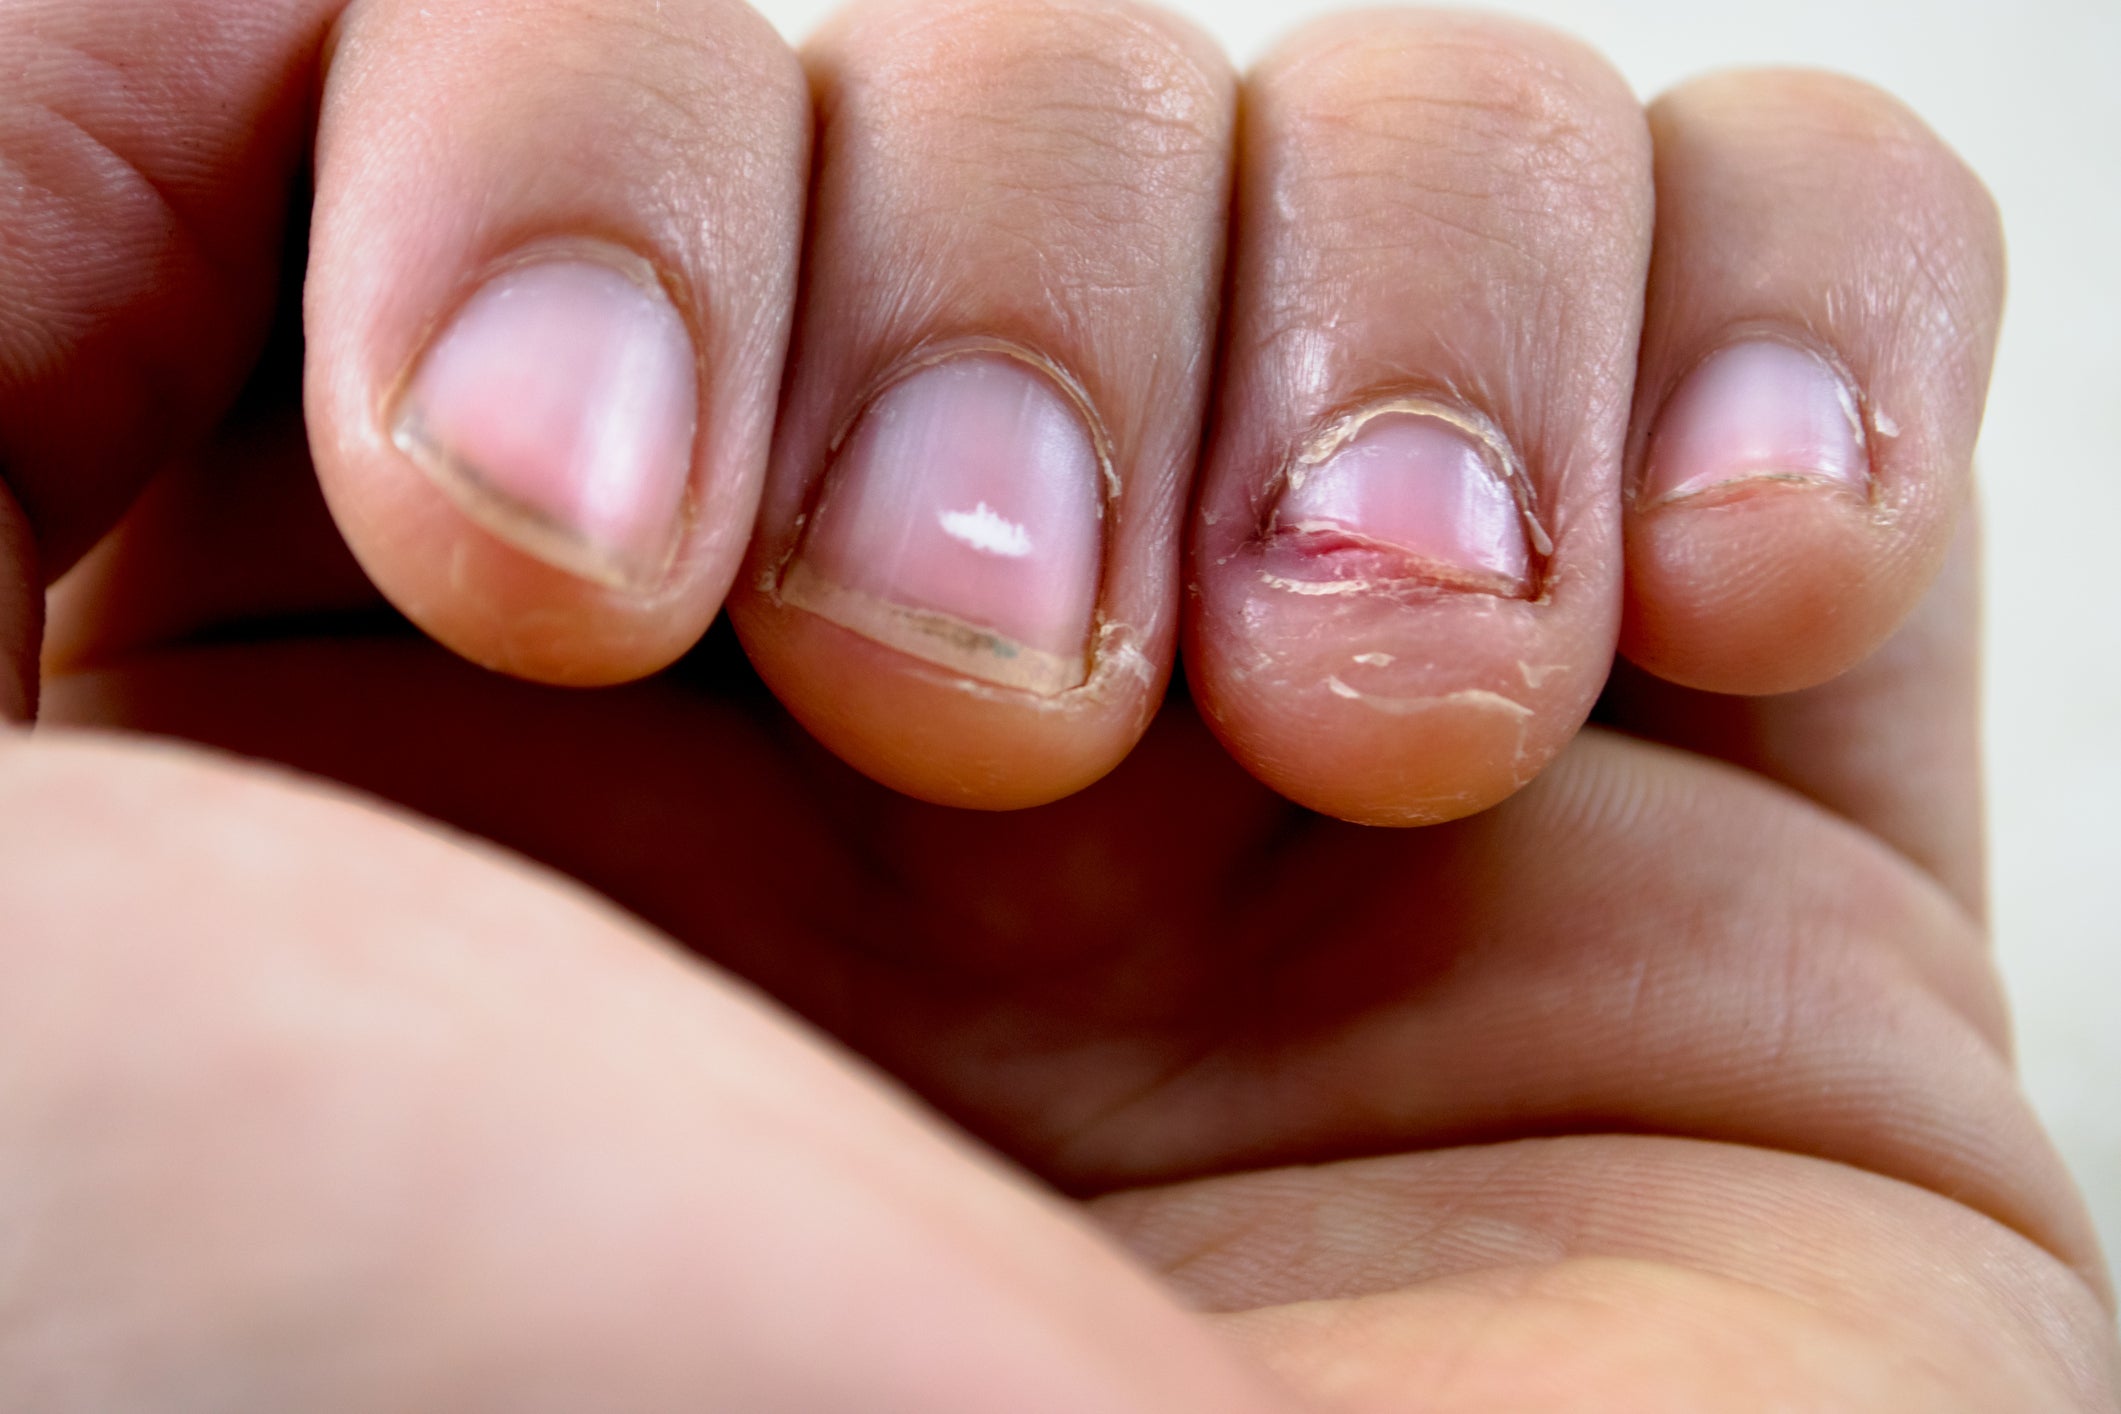 incidente En lo que respecta a las personas amenazar Le amputan el dedo a una joven al desarrollar cáncer por morderse las uñas